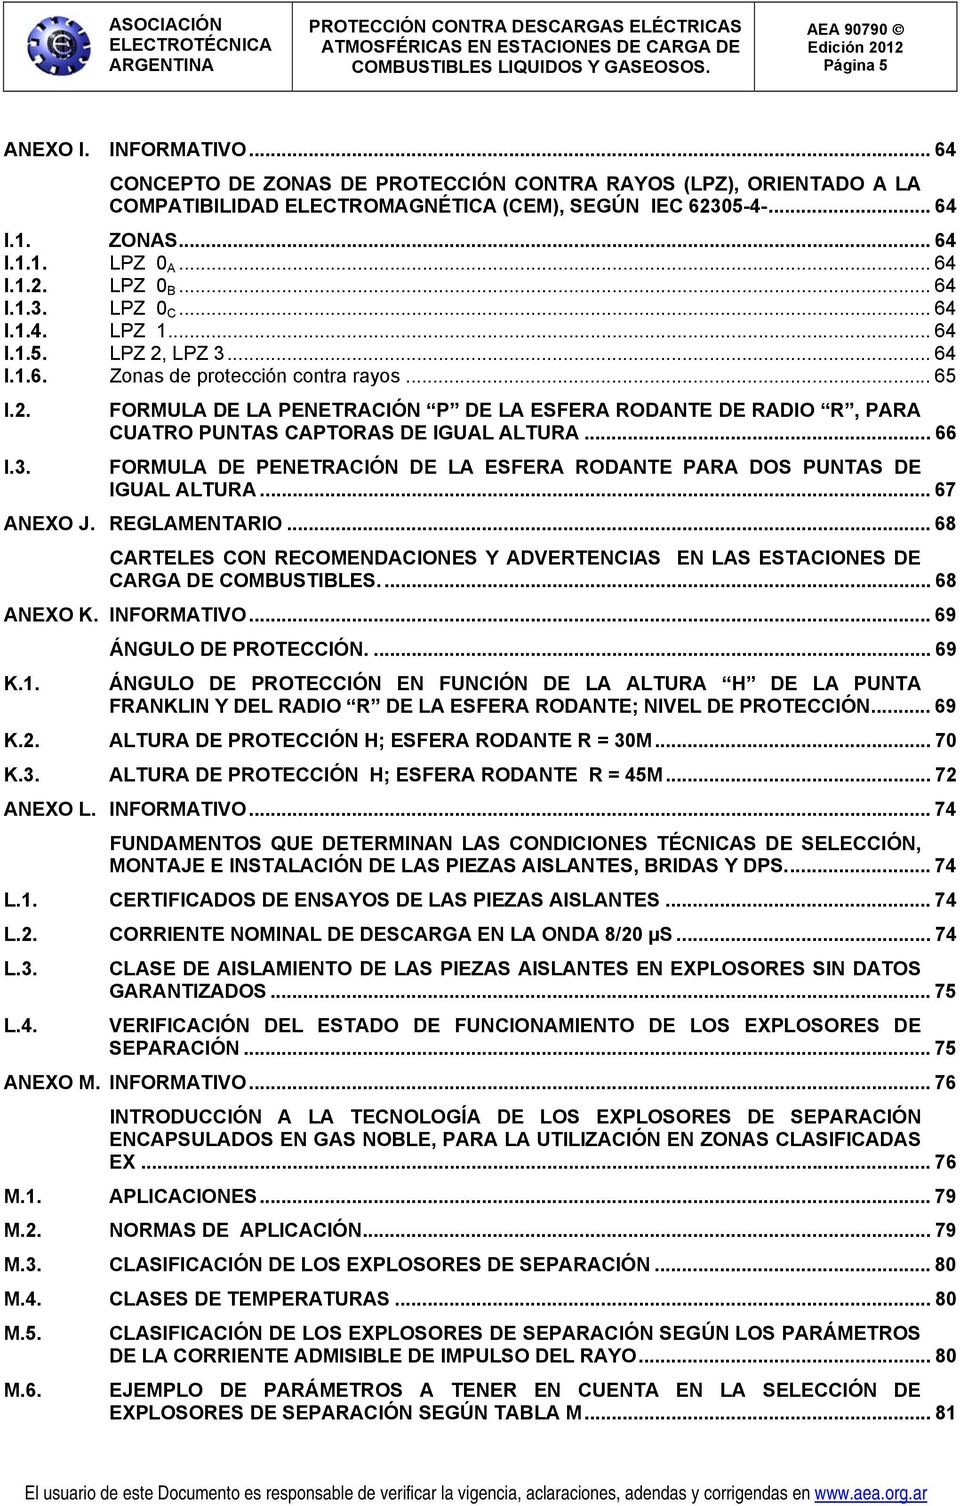 .. 66 FORMULA DE PENETRACIÓN DE LA ESFERA RODANTE PARA DOS PUNTAS DE IGUAL ALTURA... 67 ANEXO J. REGLAMENTARIO.